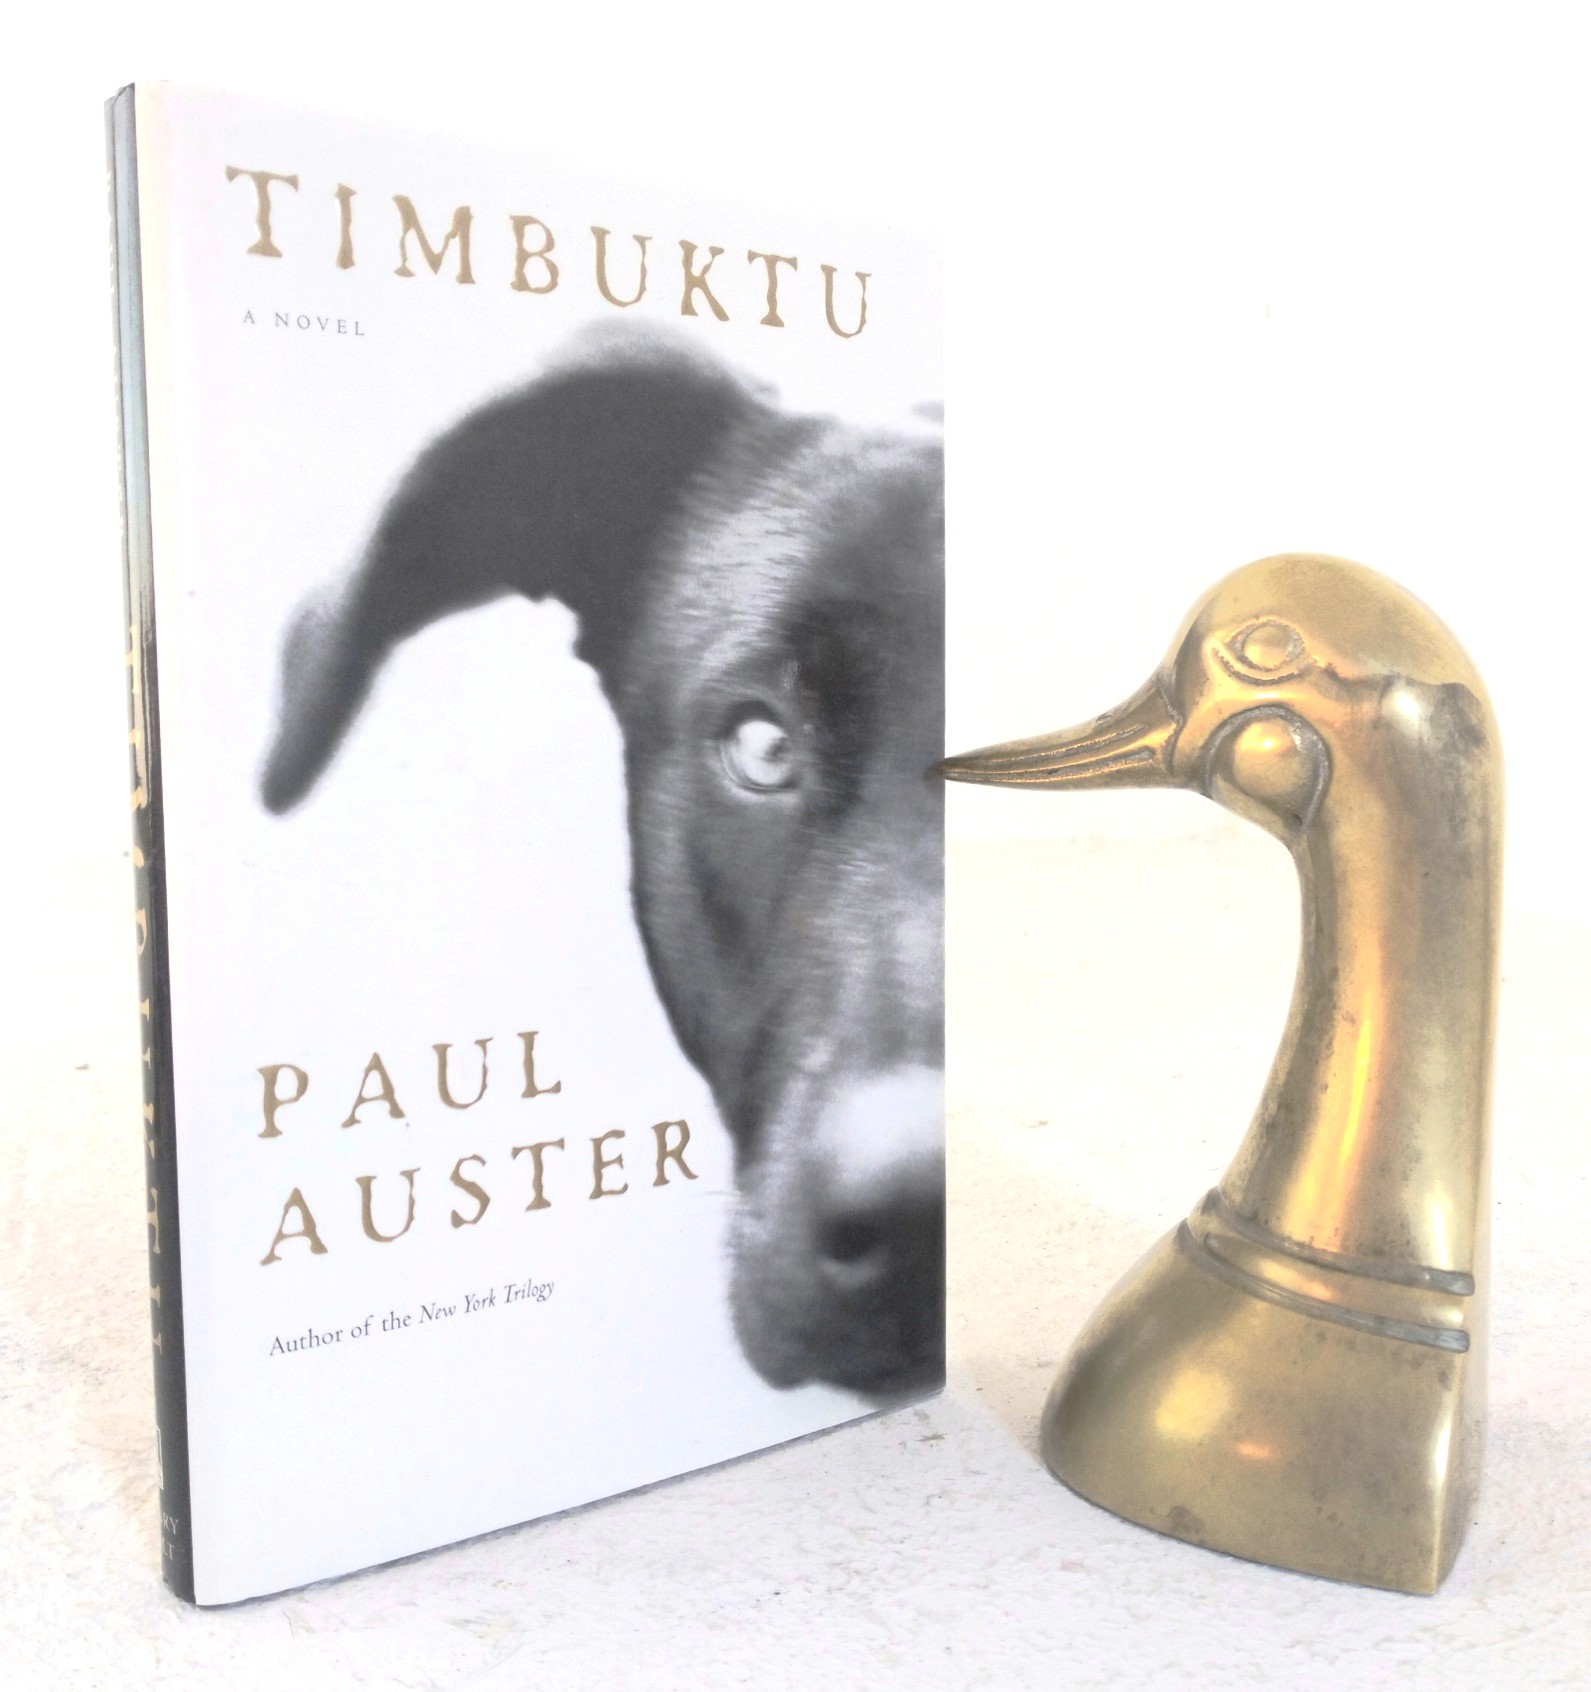 Timbuktu - Auster, Paul